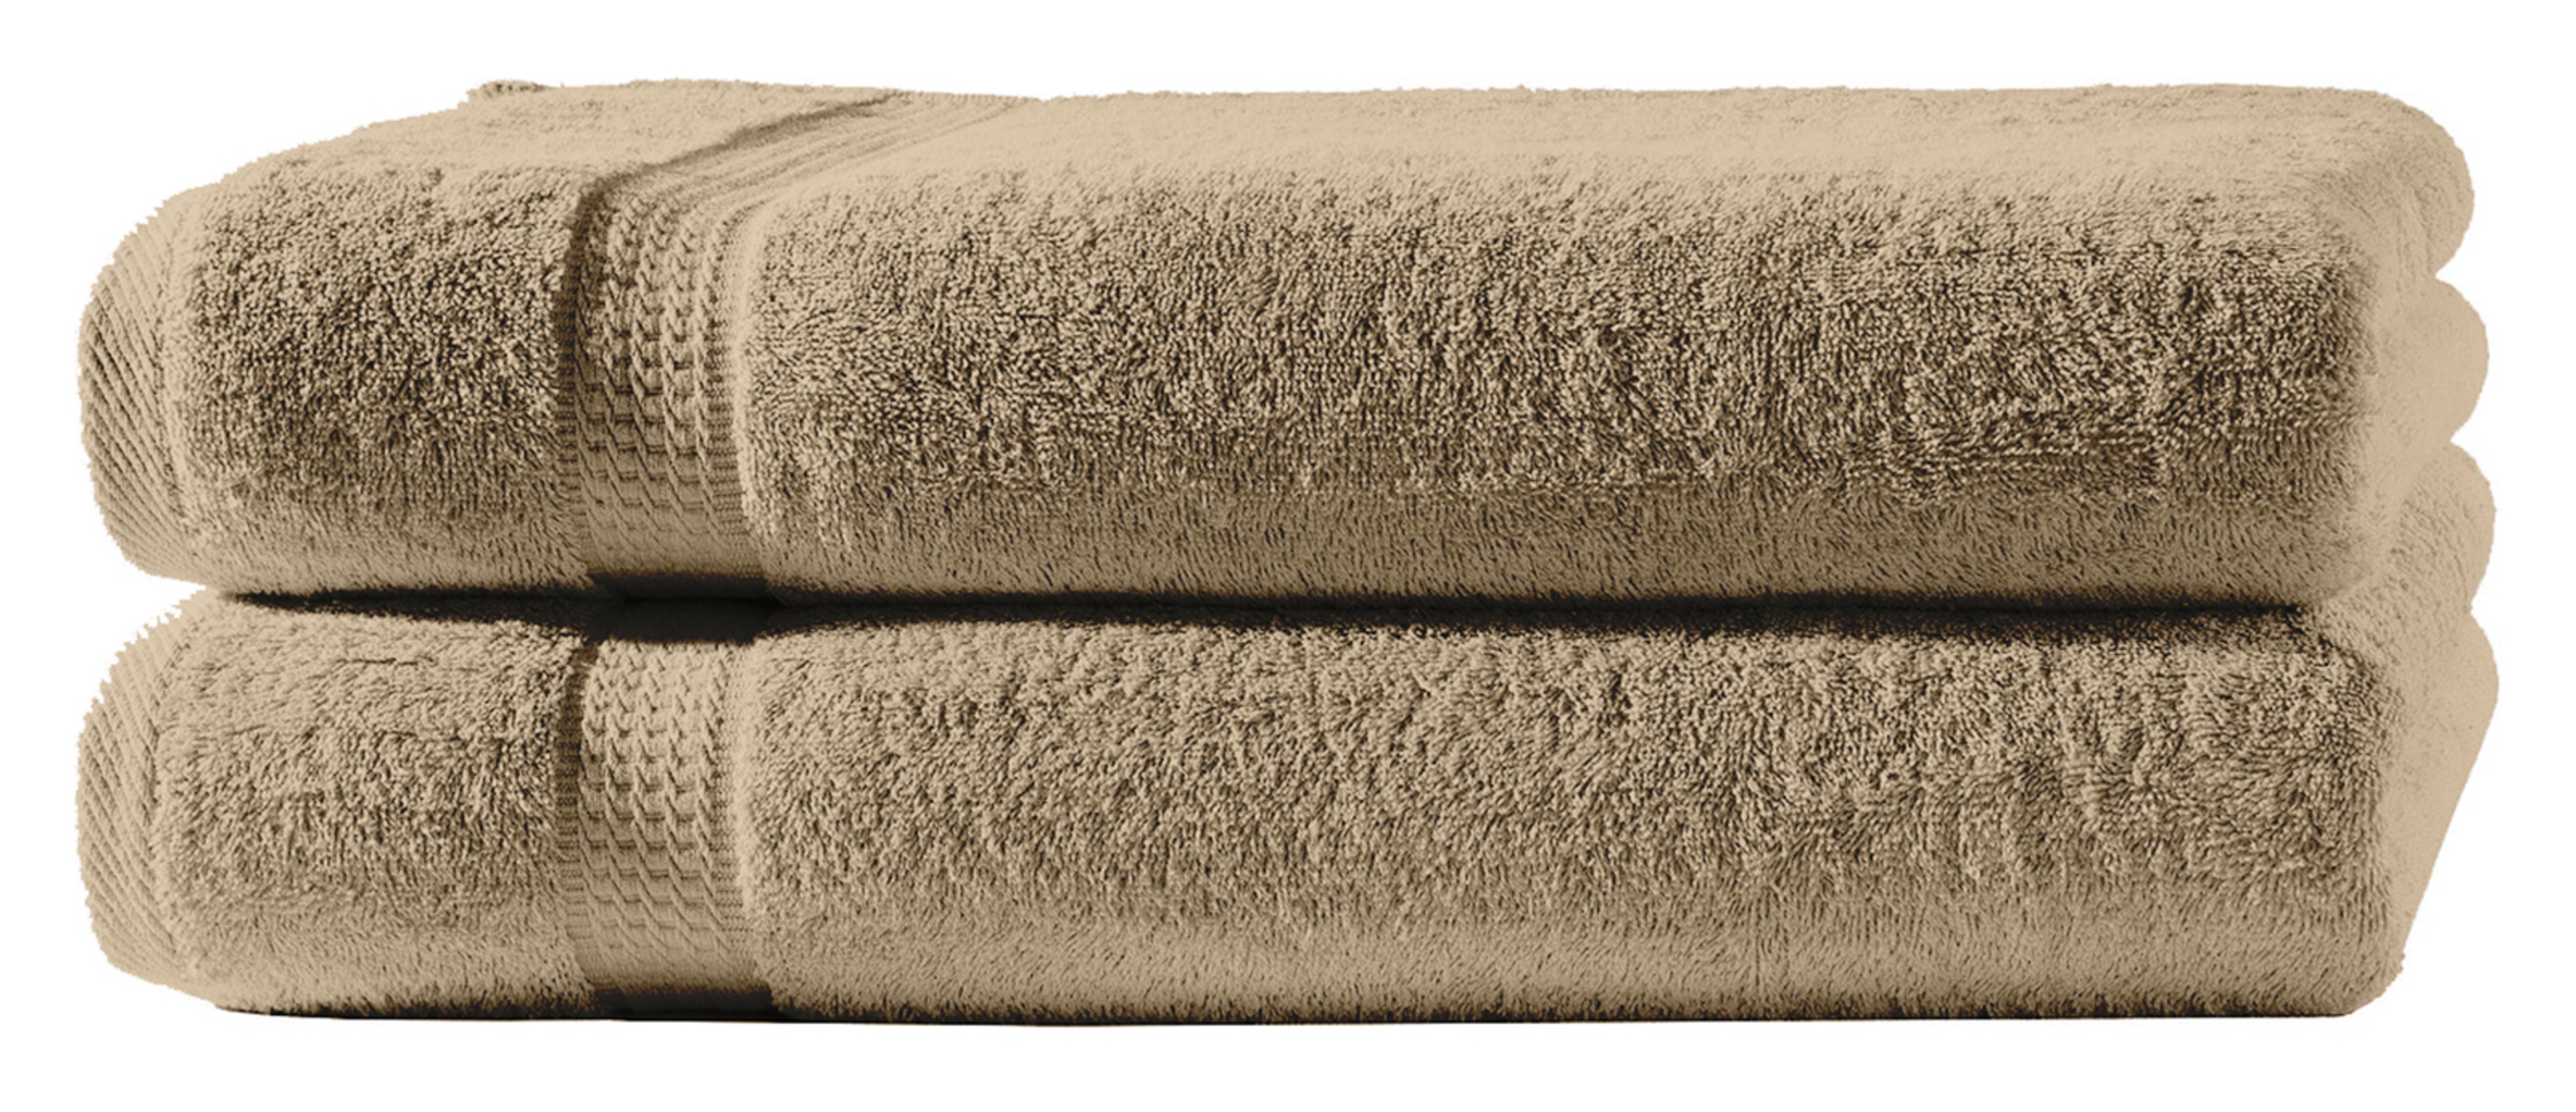 2 Handtücher beige 50x100 cm One Home weich Baumwolle | Frottee Set flauschig Handtuch